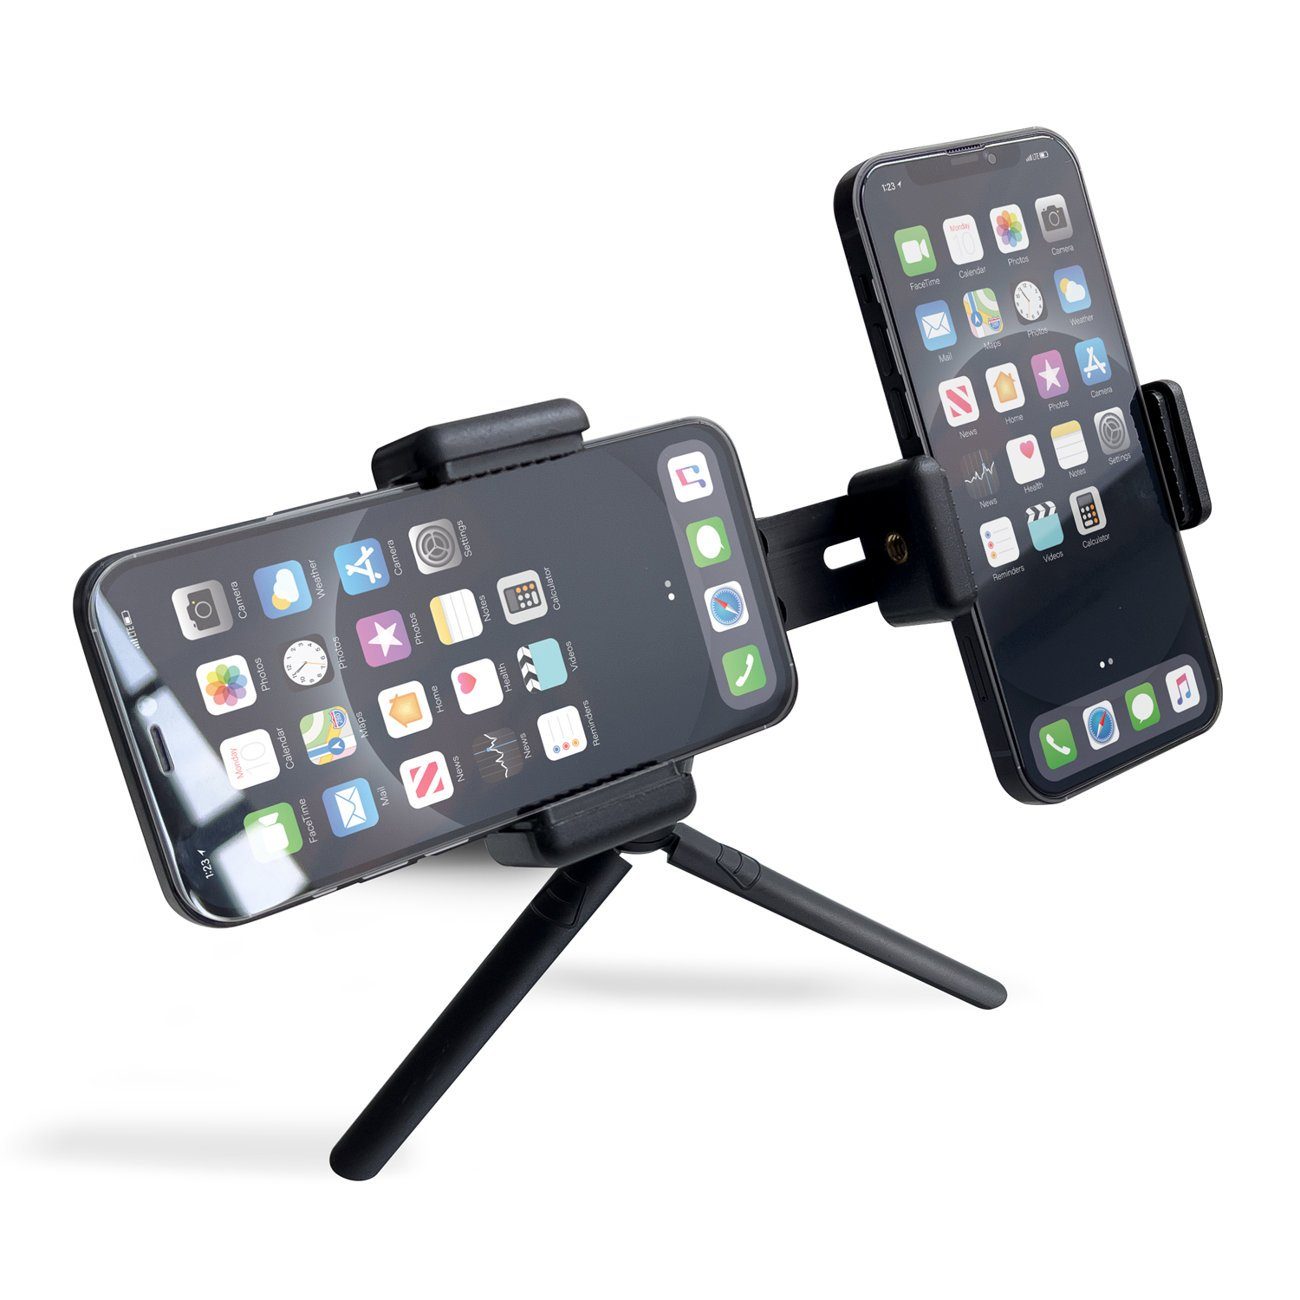 Zweifach schwarz Smartphone-Halterung mit verstellbarer Smartphone-Halter Ständer cofi1453 Stativ Halterung